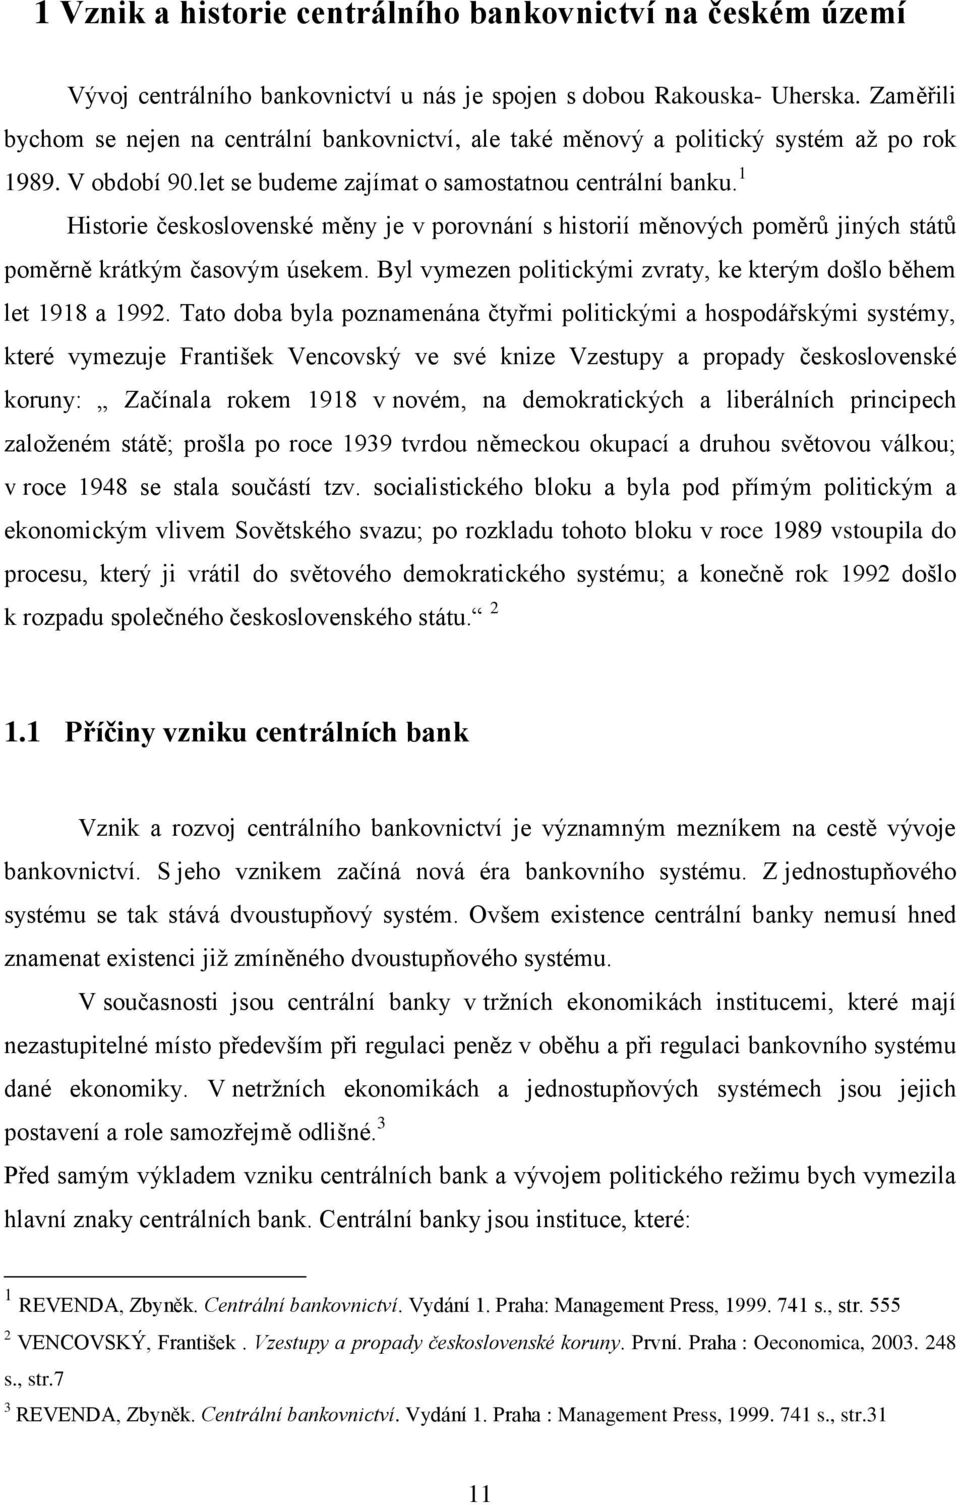 1 Historie československé měny je v porovnání s historií měnových poměrů jiných států poměrně krátkým časovým úsekem. Byl vymezen politickými zvraty, ke kterým došlo během let 1918 a 1992.